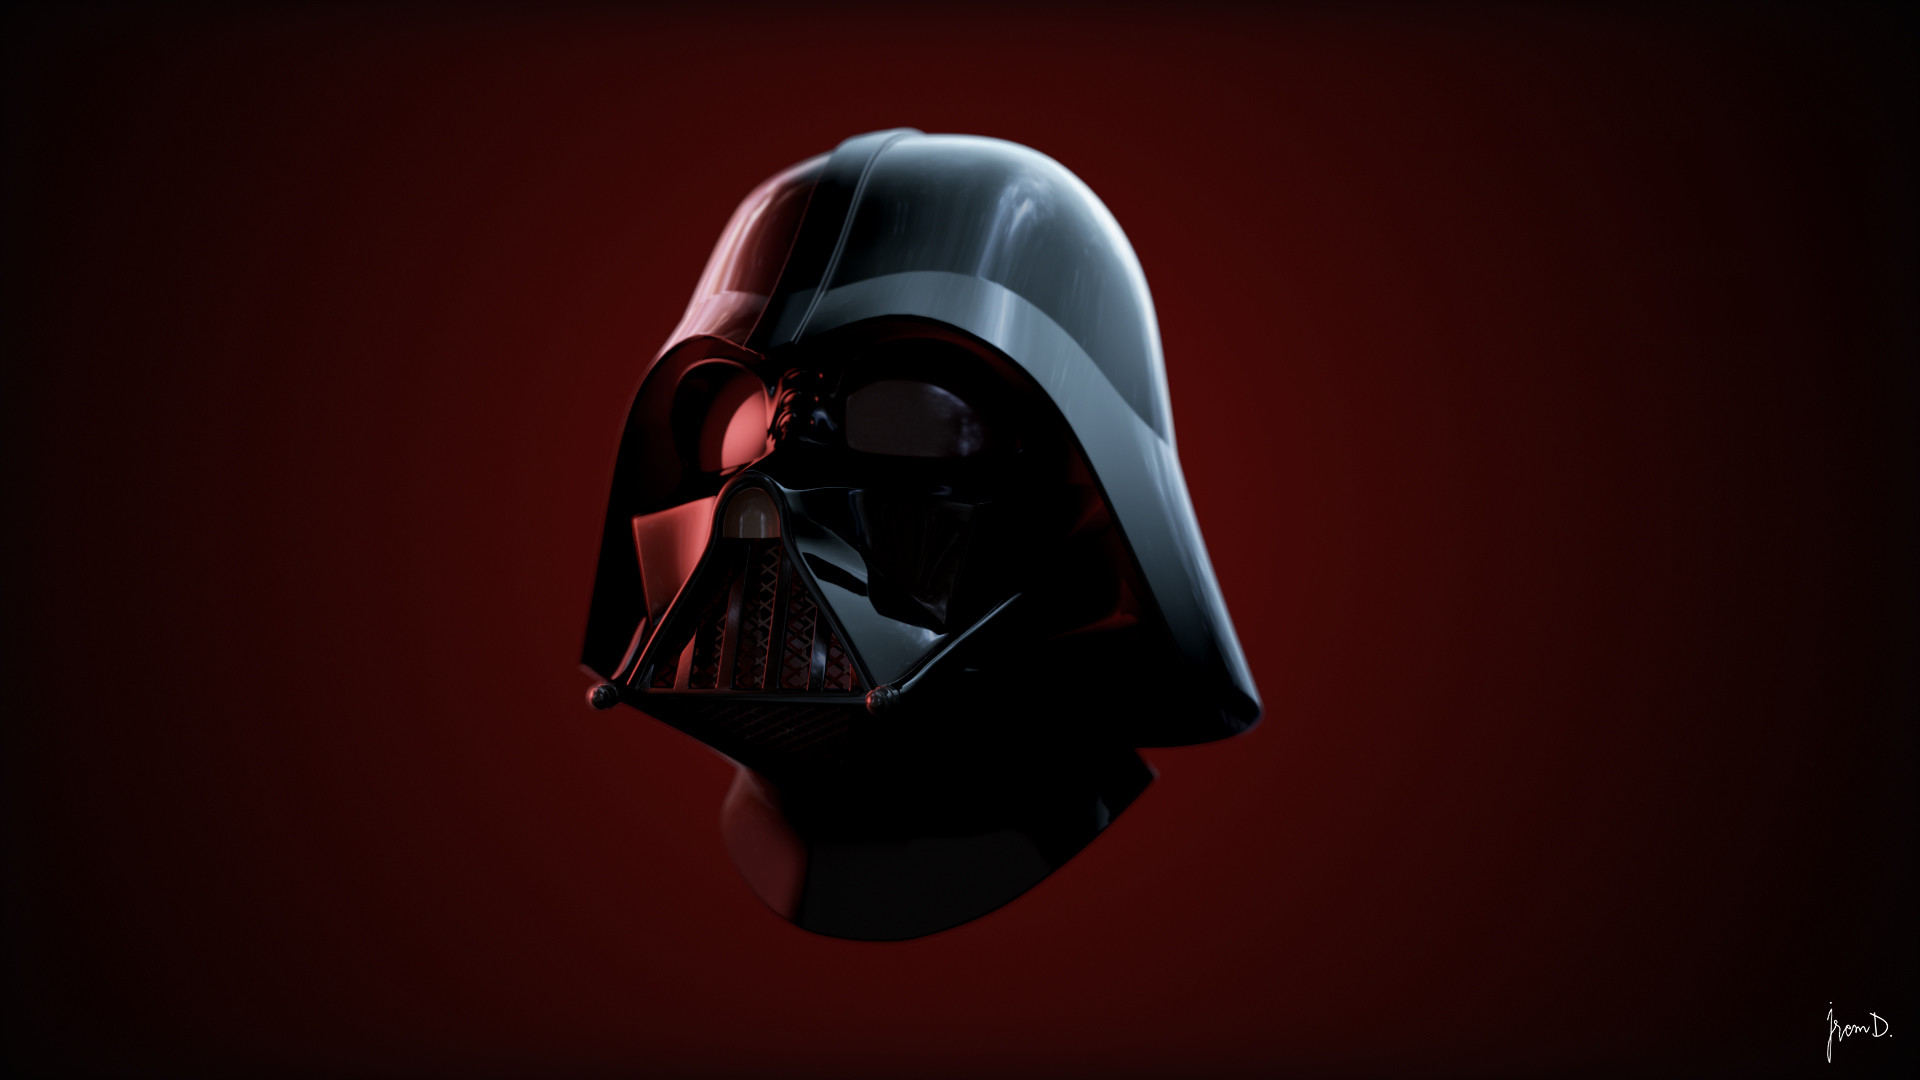 ArtStation - Darth Vader Helmet